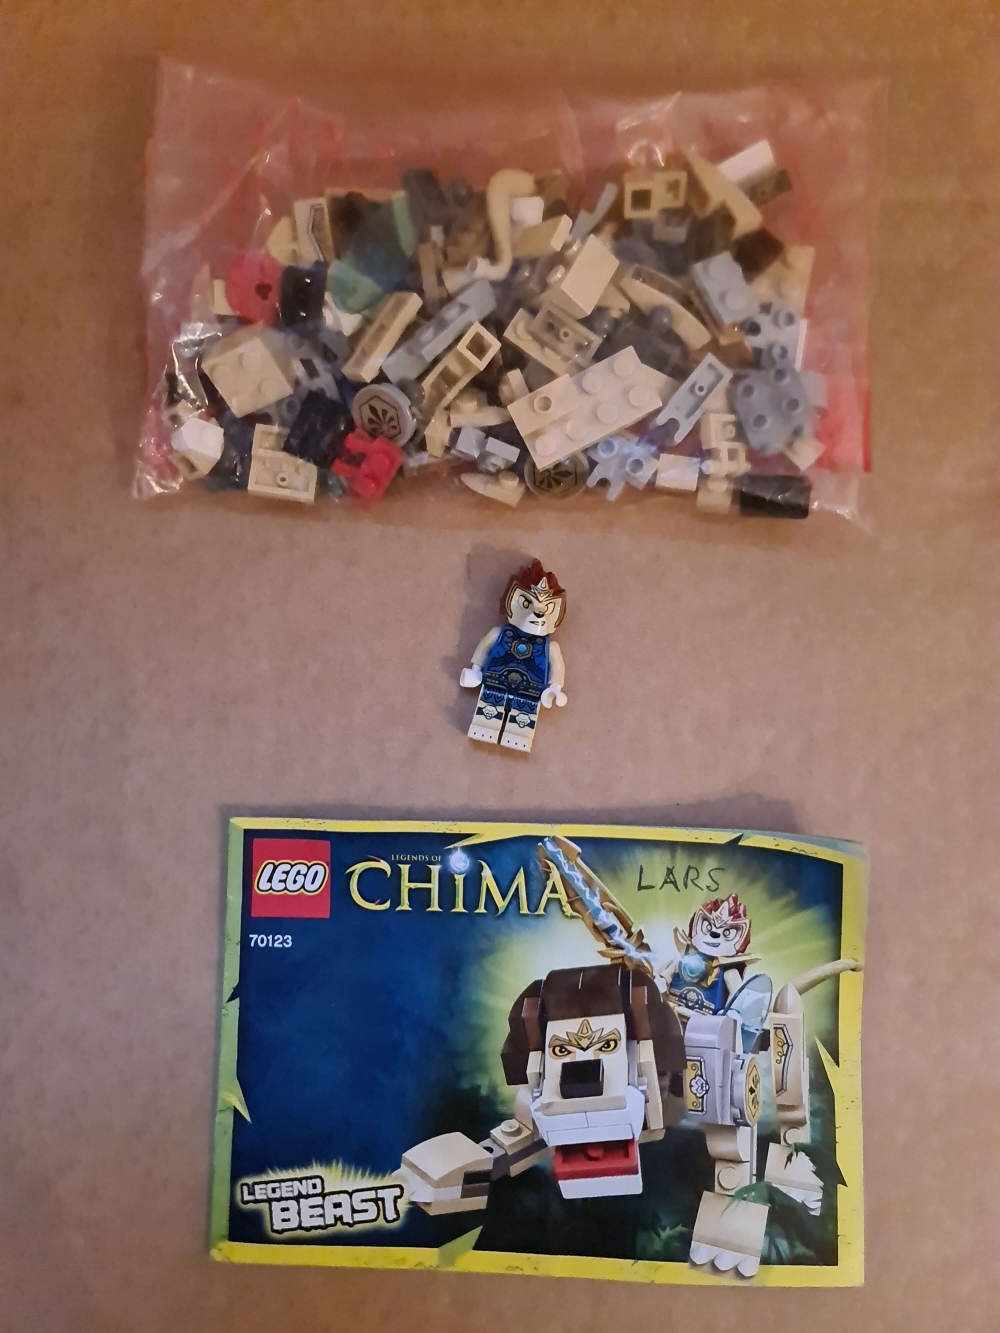 Sett 70123 fra lego Chima serien. 

Meget pent. Komplett med manual. 